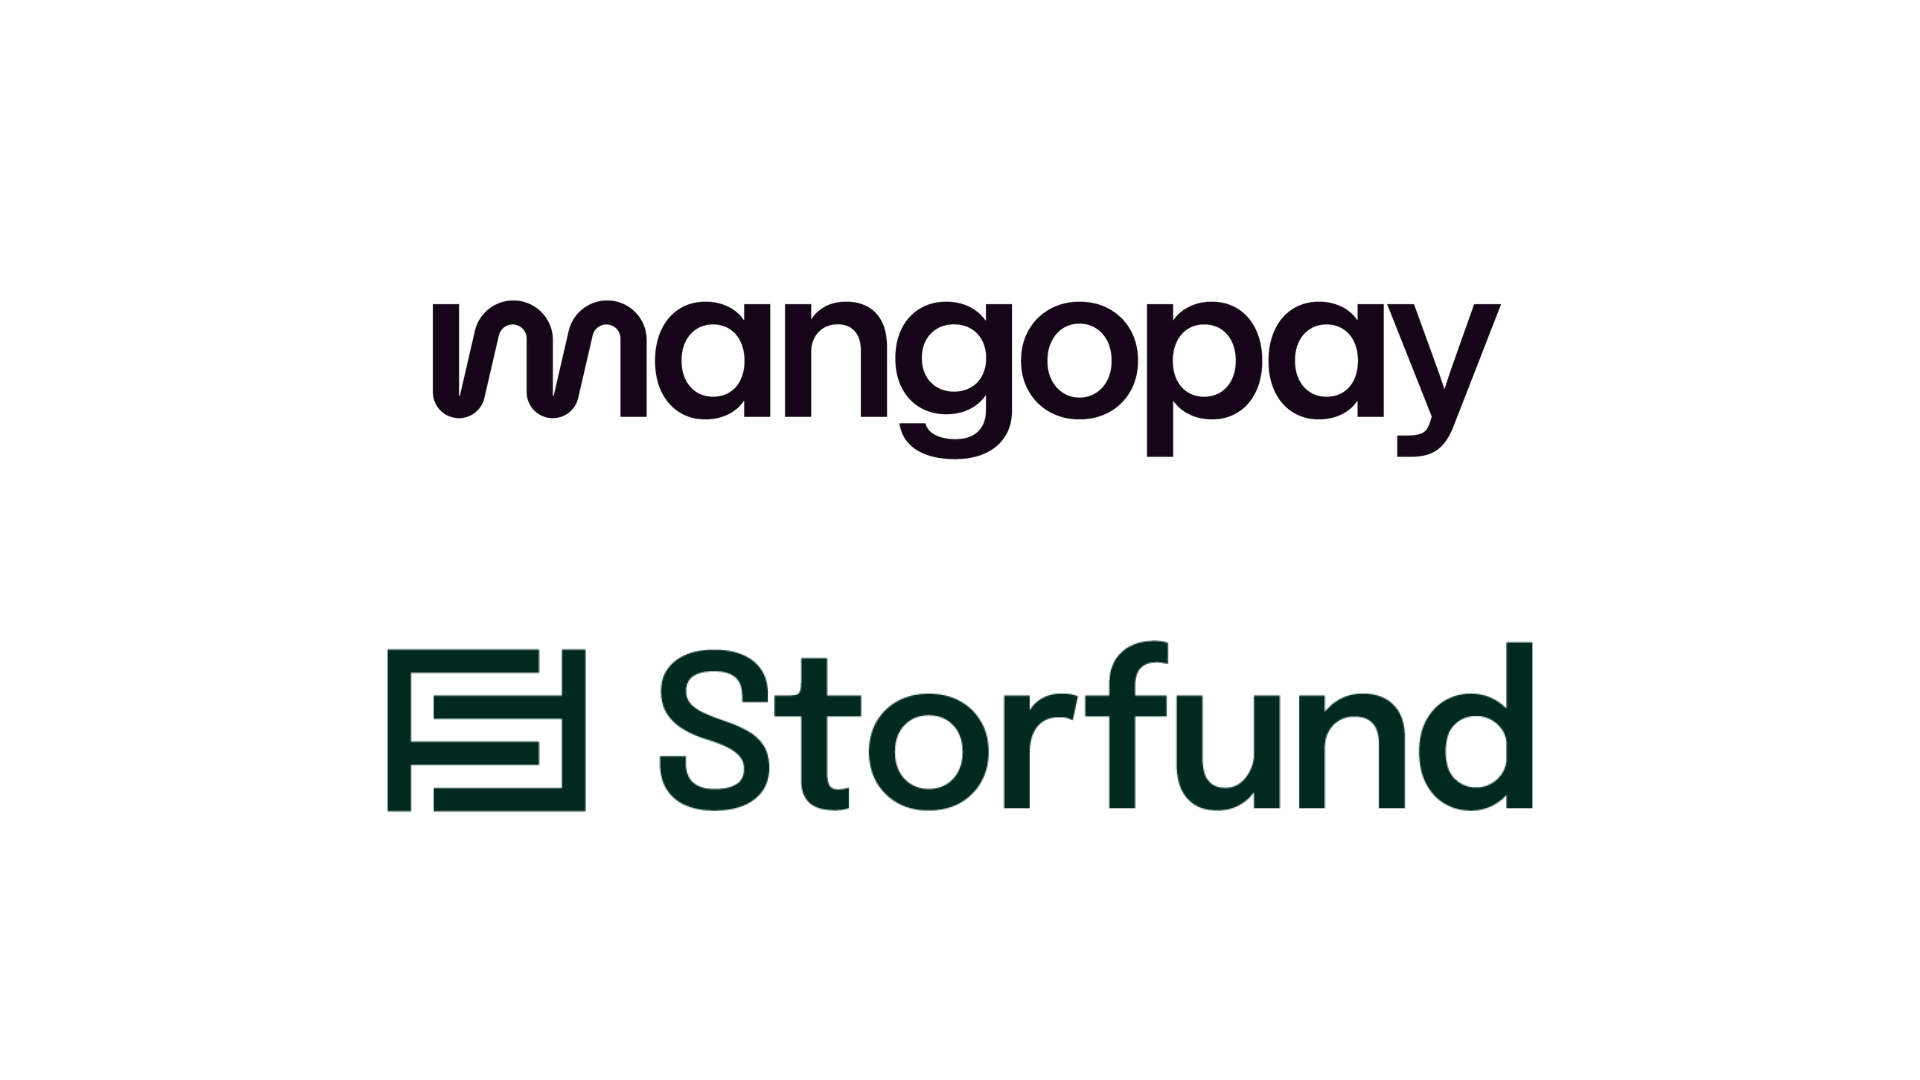 Mangopay s'associe à Storfund pour offrir aux places de marché une solution de trésorerie intégrée destinée à leurs vendeurs